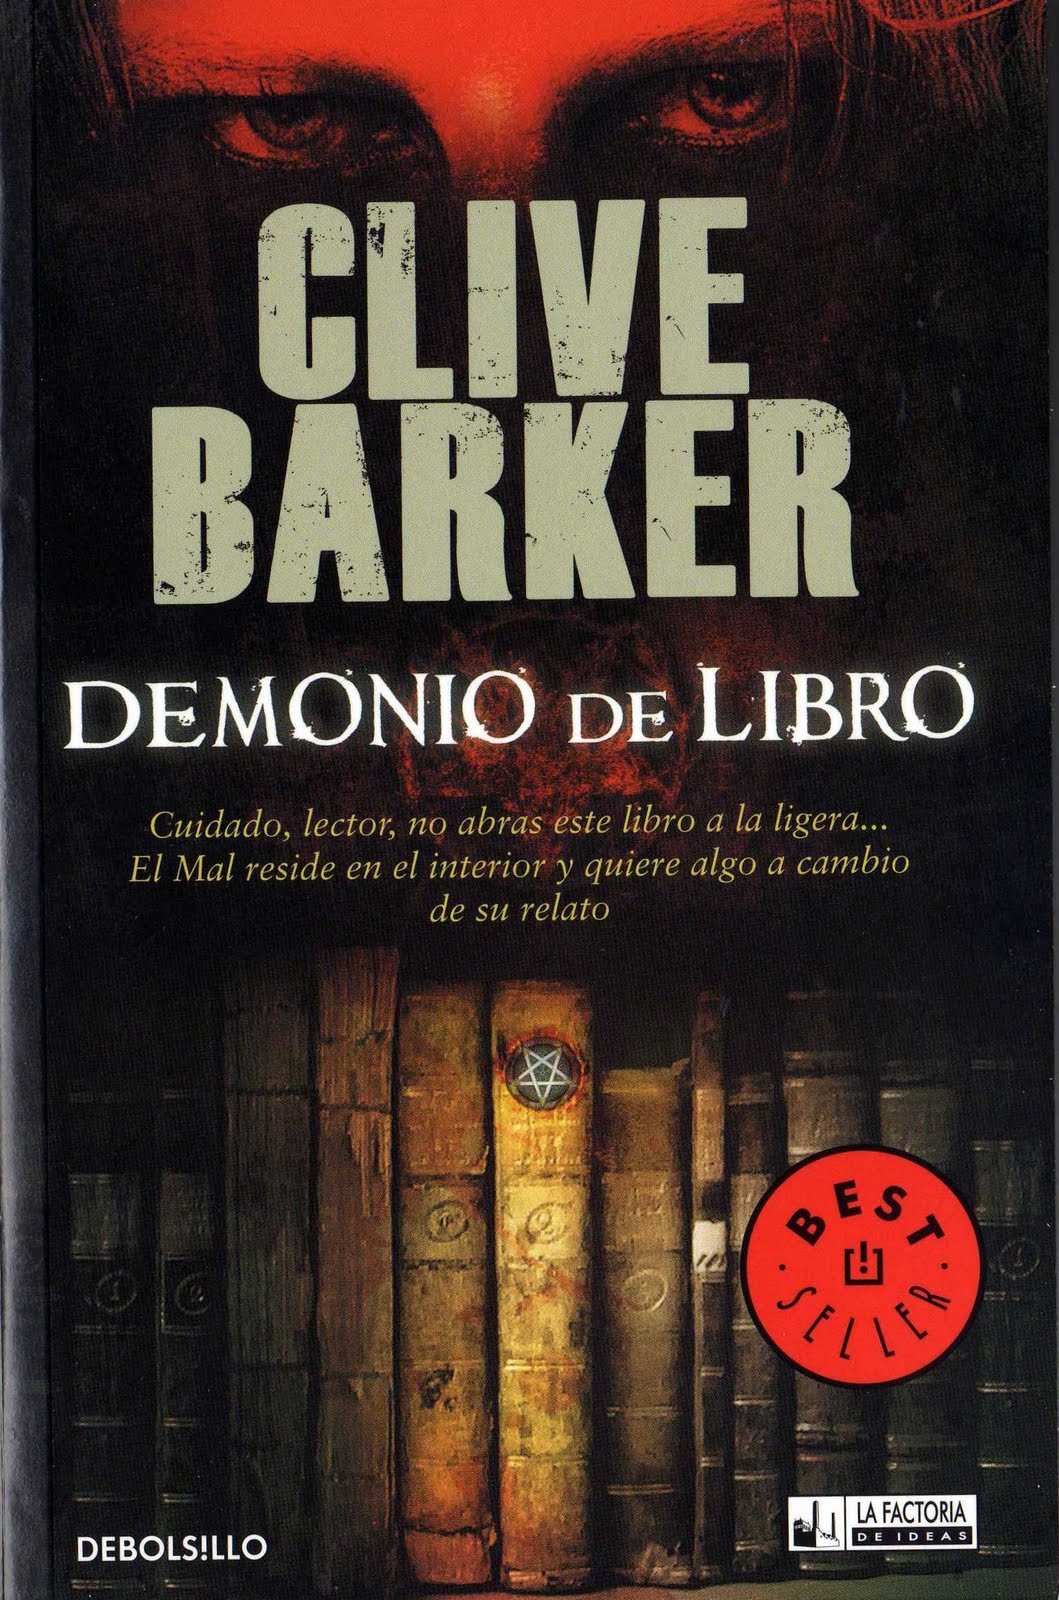 Audiolibro Demonio de libro – Clive Barker